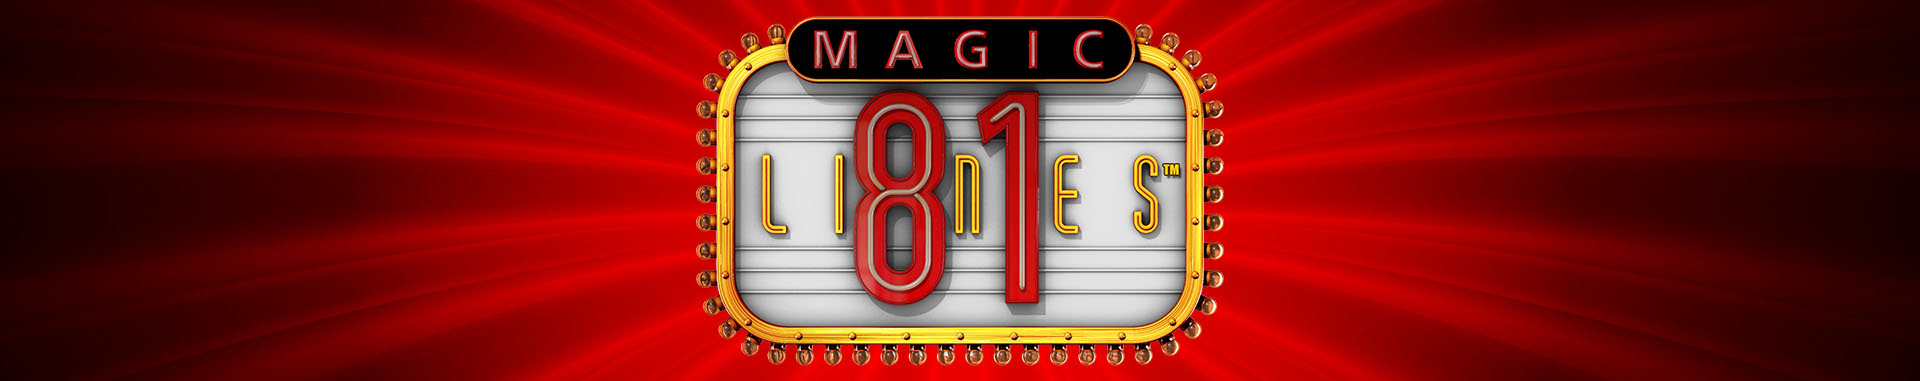 Tragaperras Online Magic 81 Lines